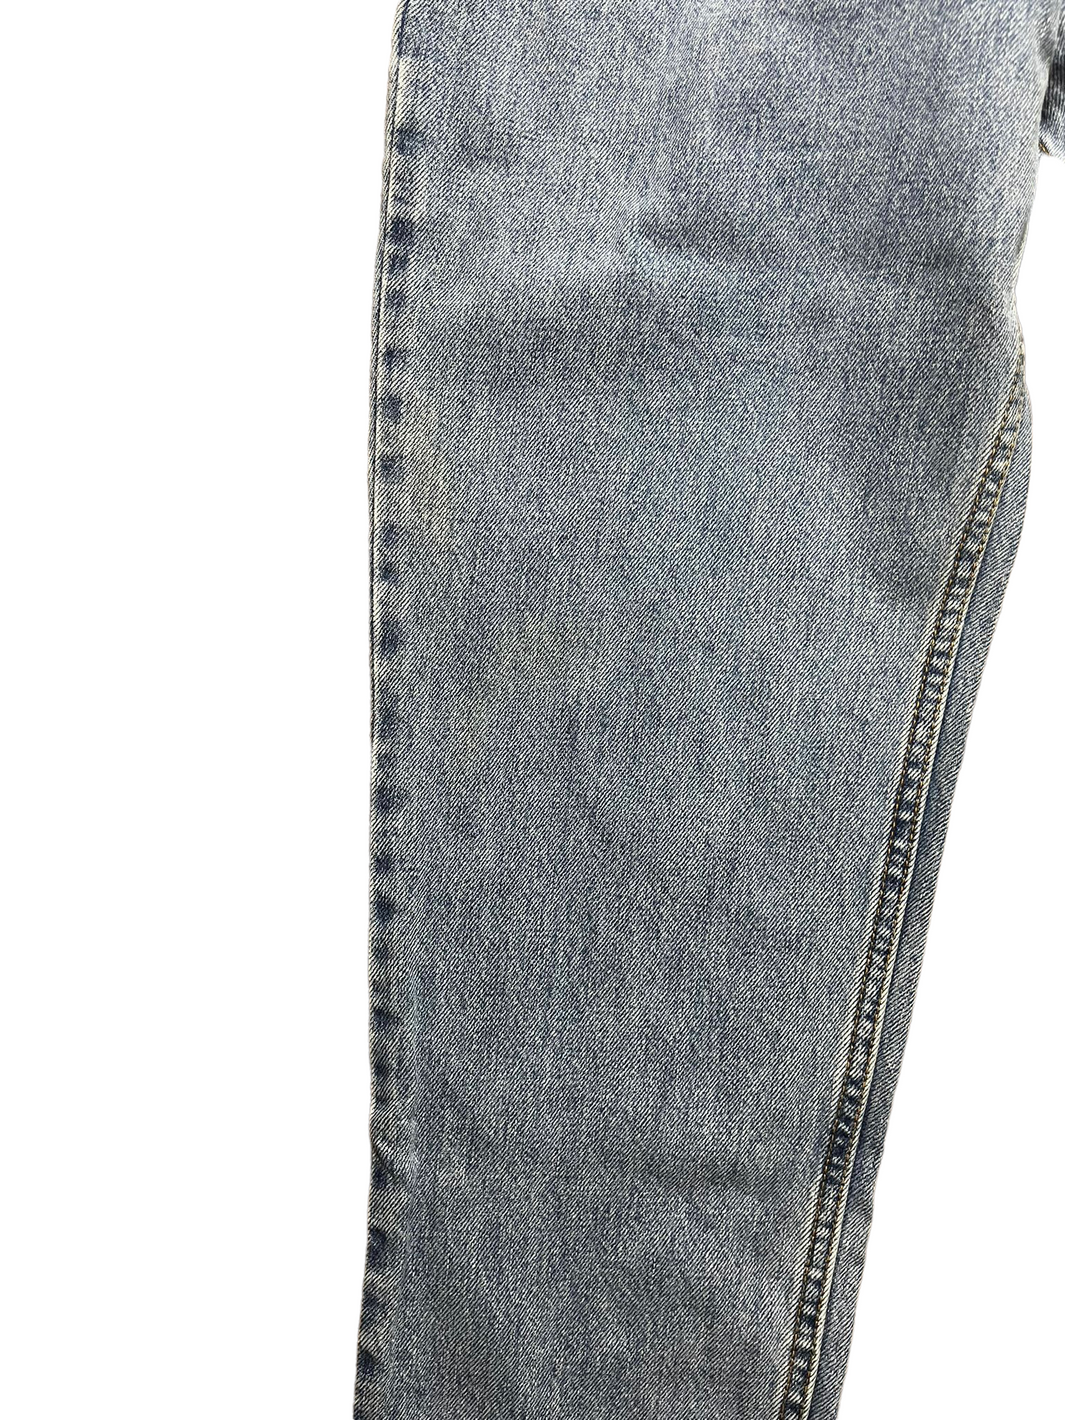 Levi’s 550 Jeans